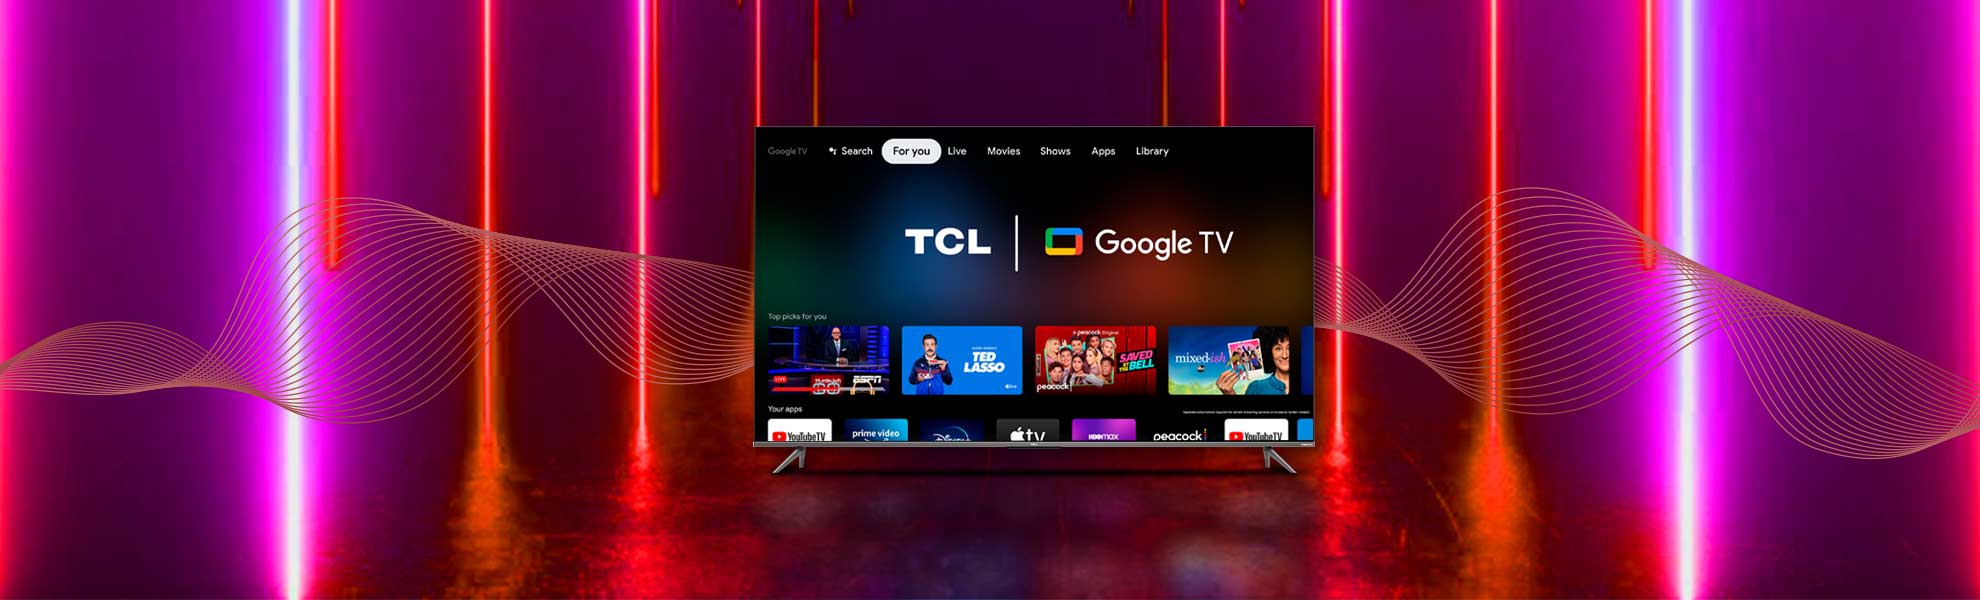 همه چیز درباره تلویزیون Google TV و تفاوت با اندروید تی وی